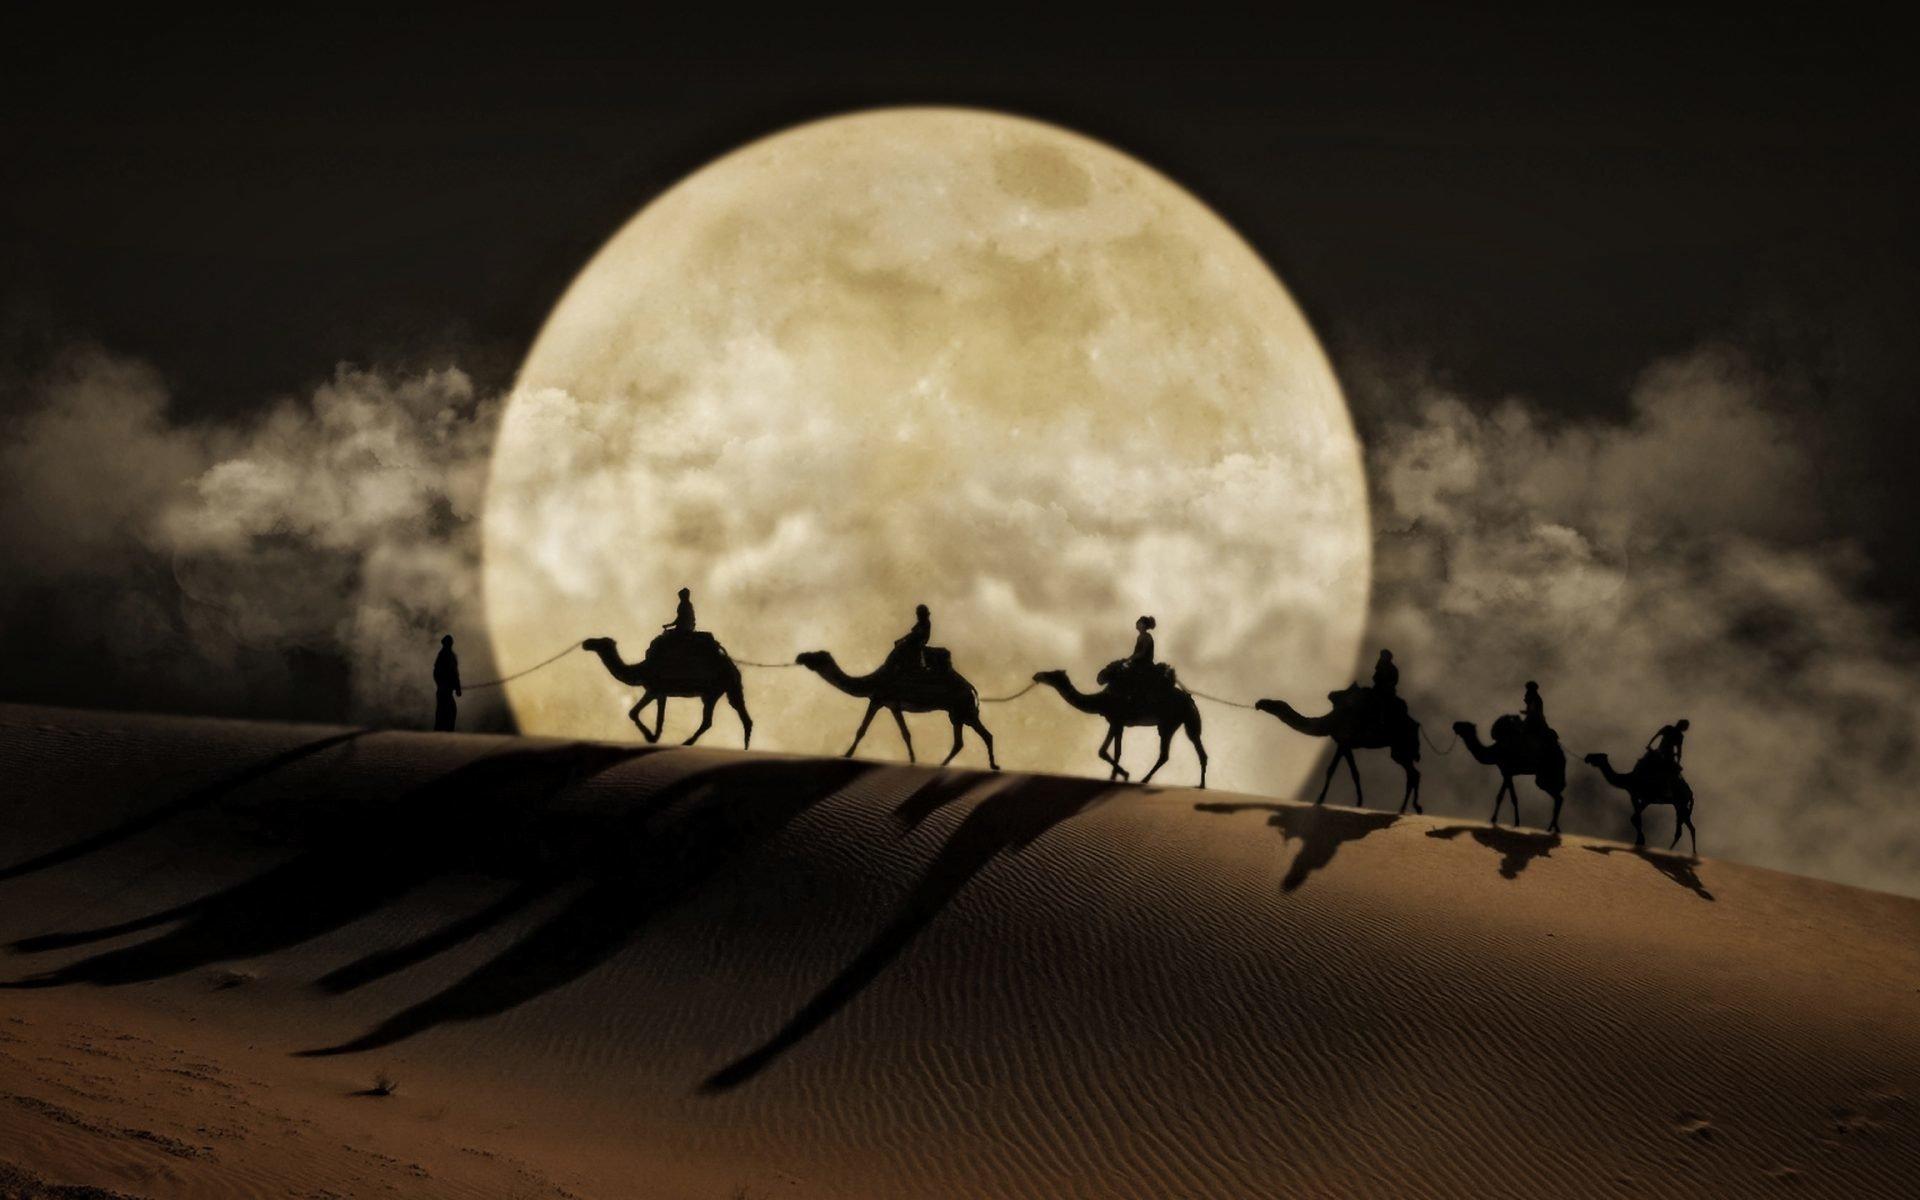 moon over savanna desert